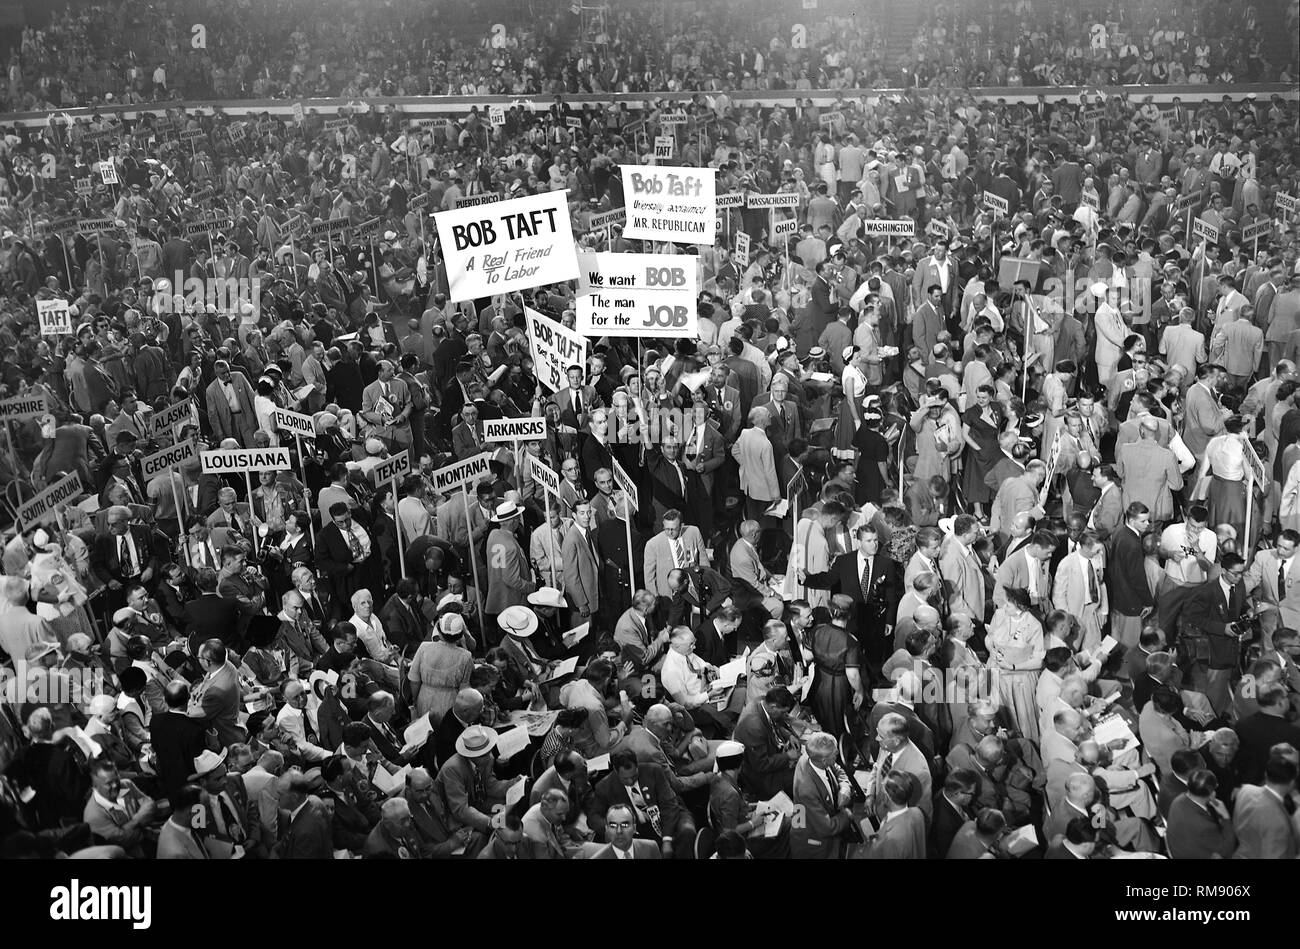 Signos para Robert Taft se muestran en el suelo del anfiteatro Internacional durante la convención republicana de 1952. Foto de stock